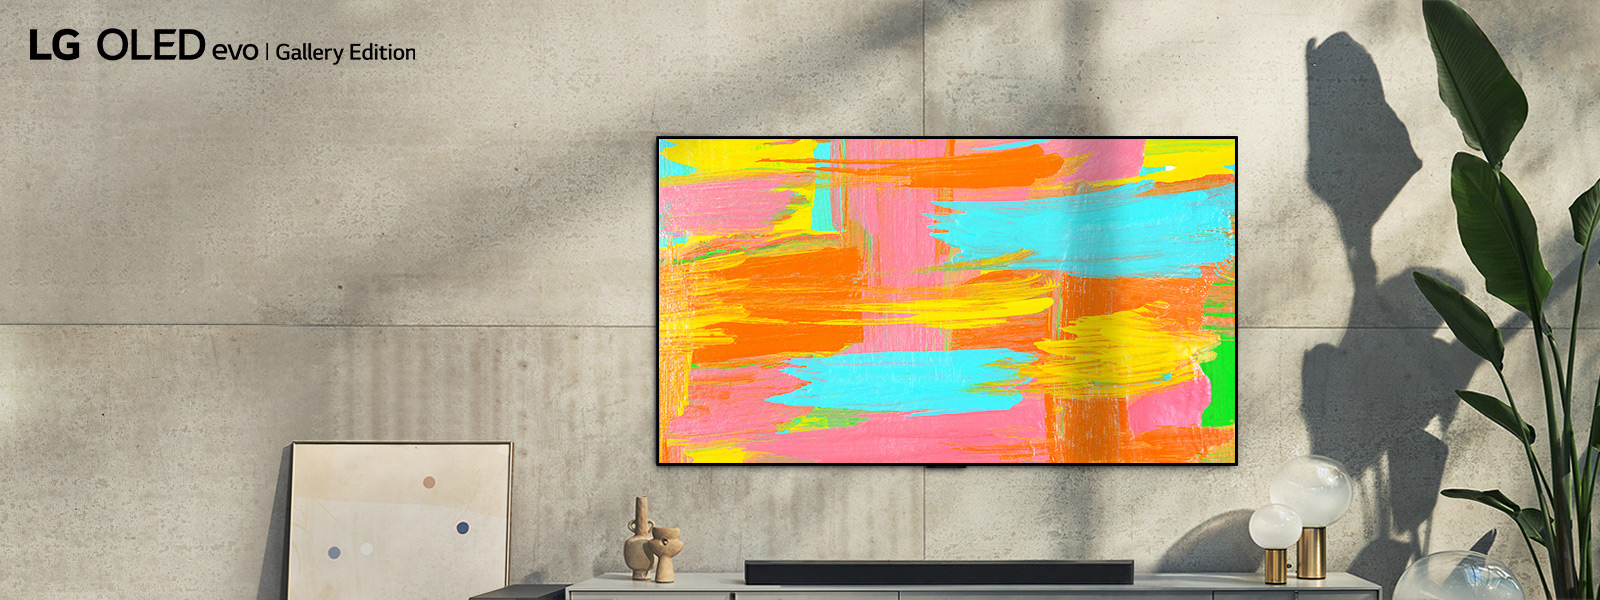 Zdjęcie telewizora LG OLED G2 zawieszonego na ścianie w minimalistycznie urządzonym szarym pokoju. Na ekranie jest wyświetlone jaskrawe abstrakcyjne dzieło sztuki. Nad zdjęciem znajduje się napis „Estetyka na najwyższym poziomie”.